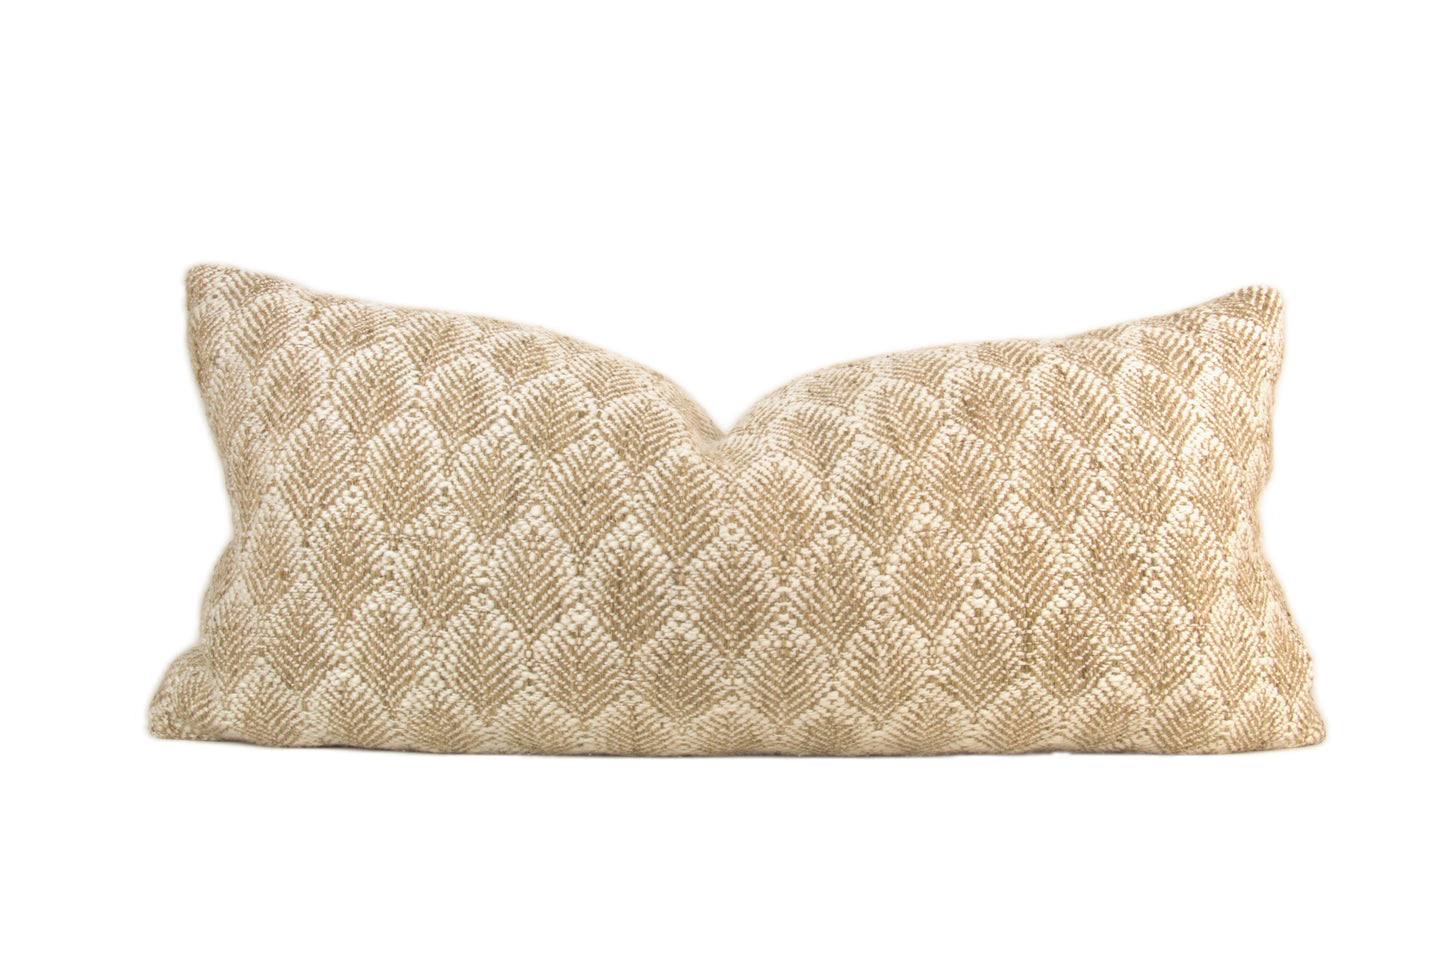 Camel Gold Lumbar Pillow Cover - Aesthetic Abode